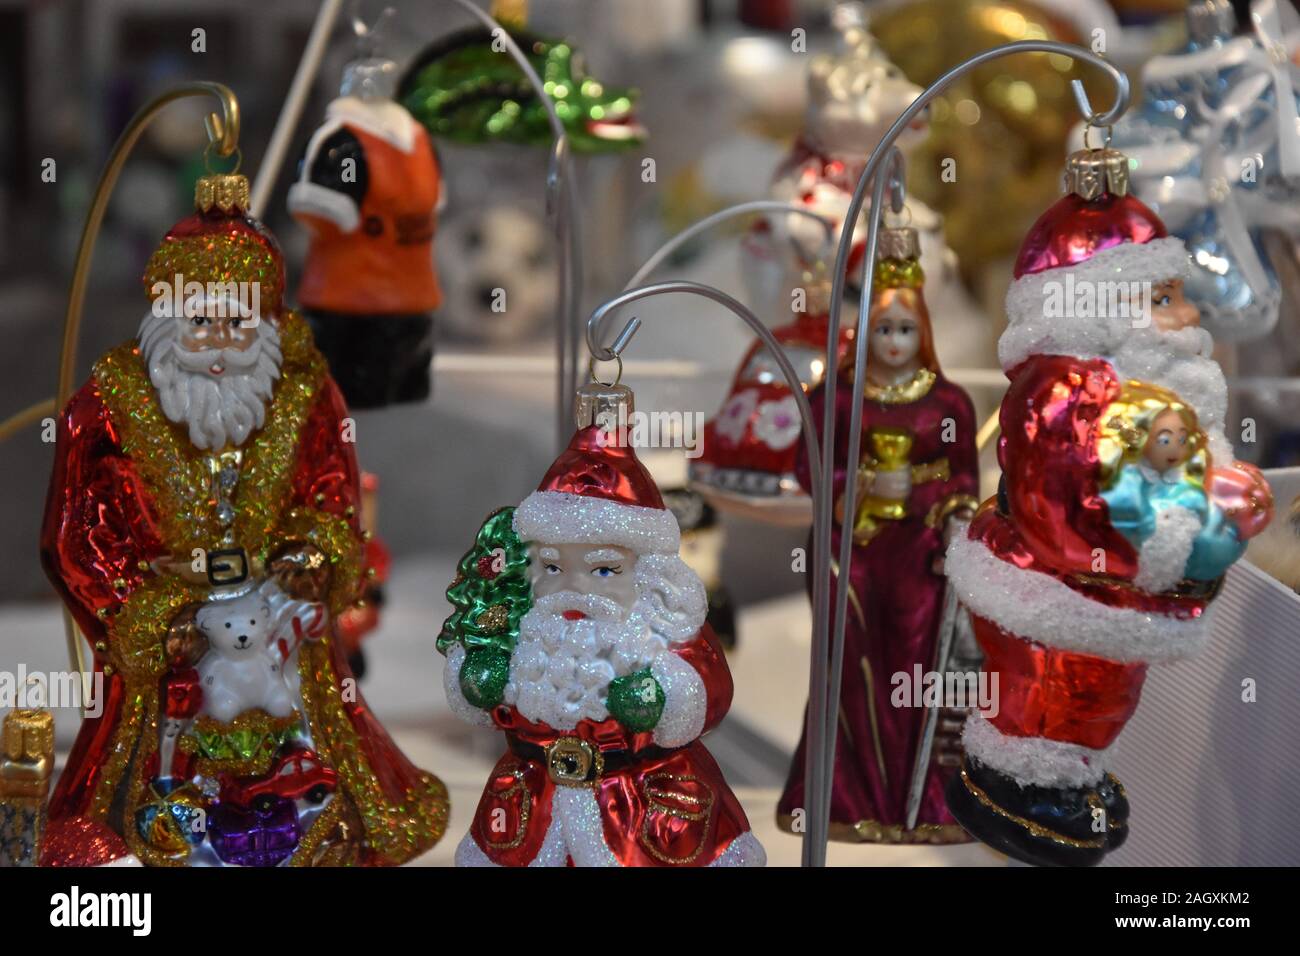 Lubin, Polen. 22 Dez, 2019. Weihnachten Glas Christbaumschmuck. Die Vitbis  Firma von Zlotoryja im Jahre 1953 gegründet wurde. Es liefert seine  Produkte in alle Märkte der Welt seit über 60 Jahren. Als